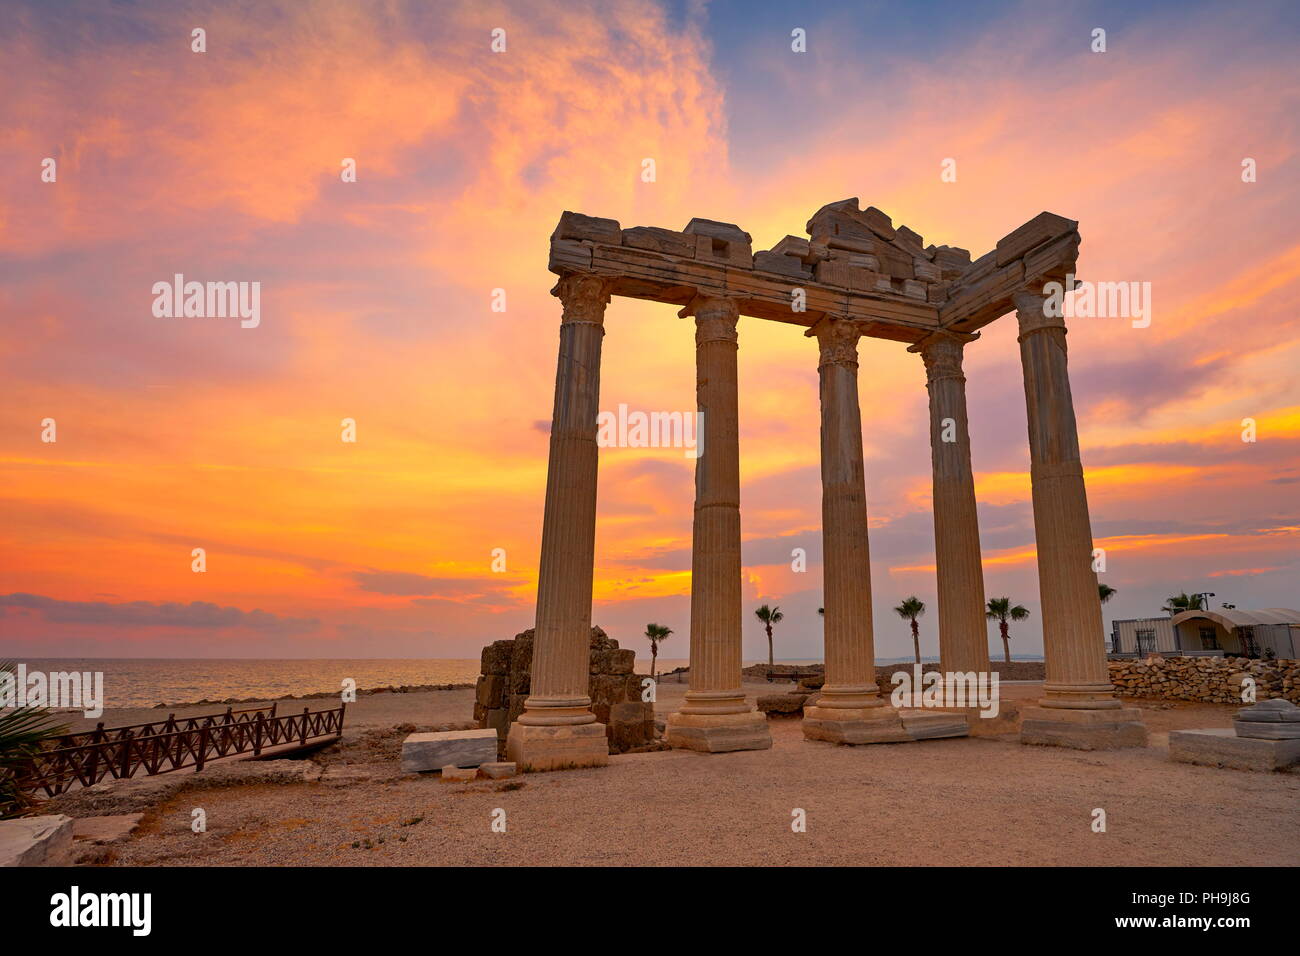 Apollon Temple at sunset, Side, Antalya, Turkey Stock Photo